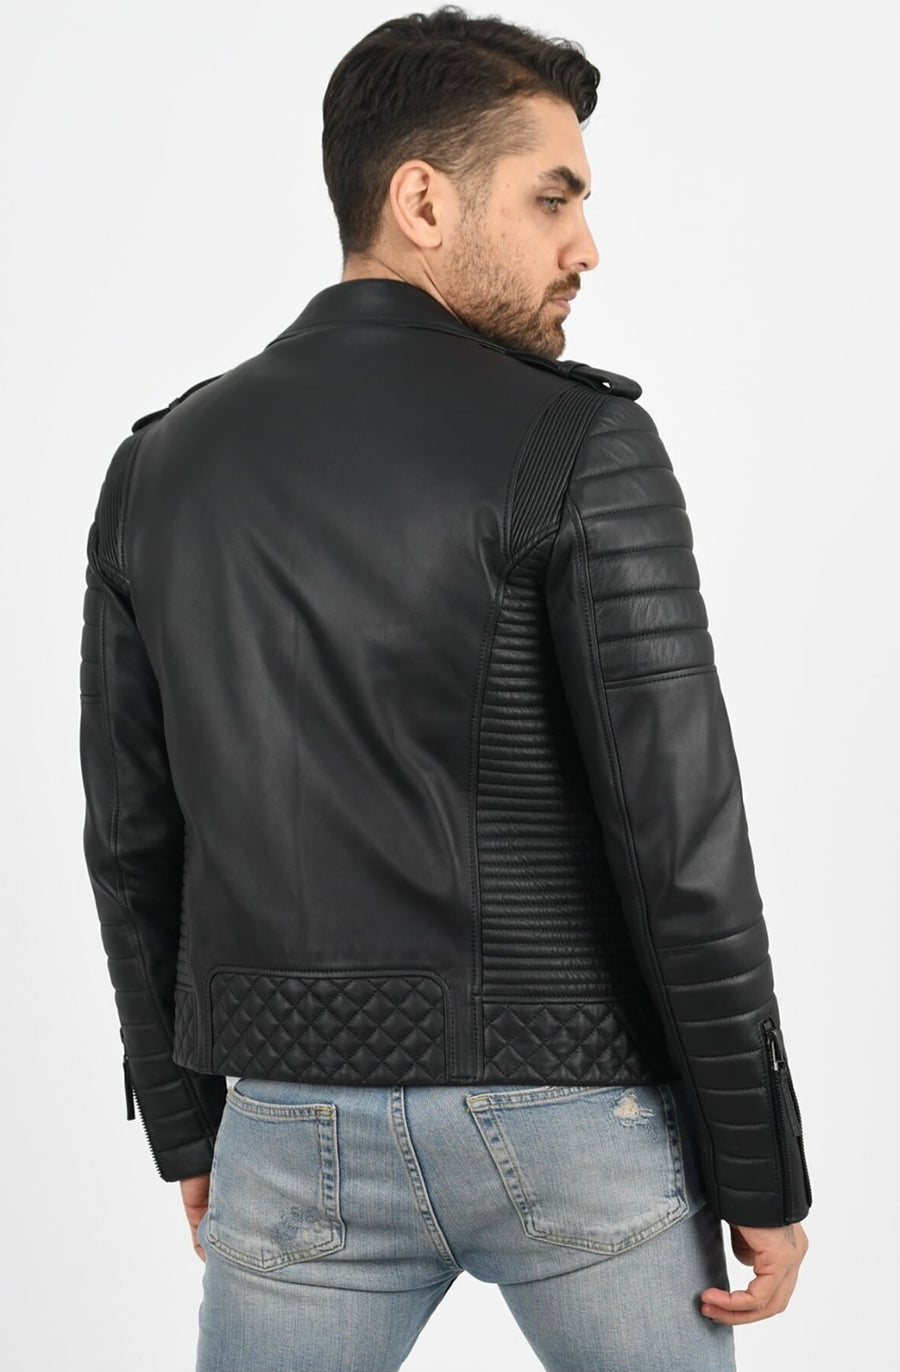 Men's Biker Black Leather Jacket